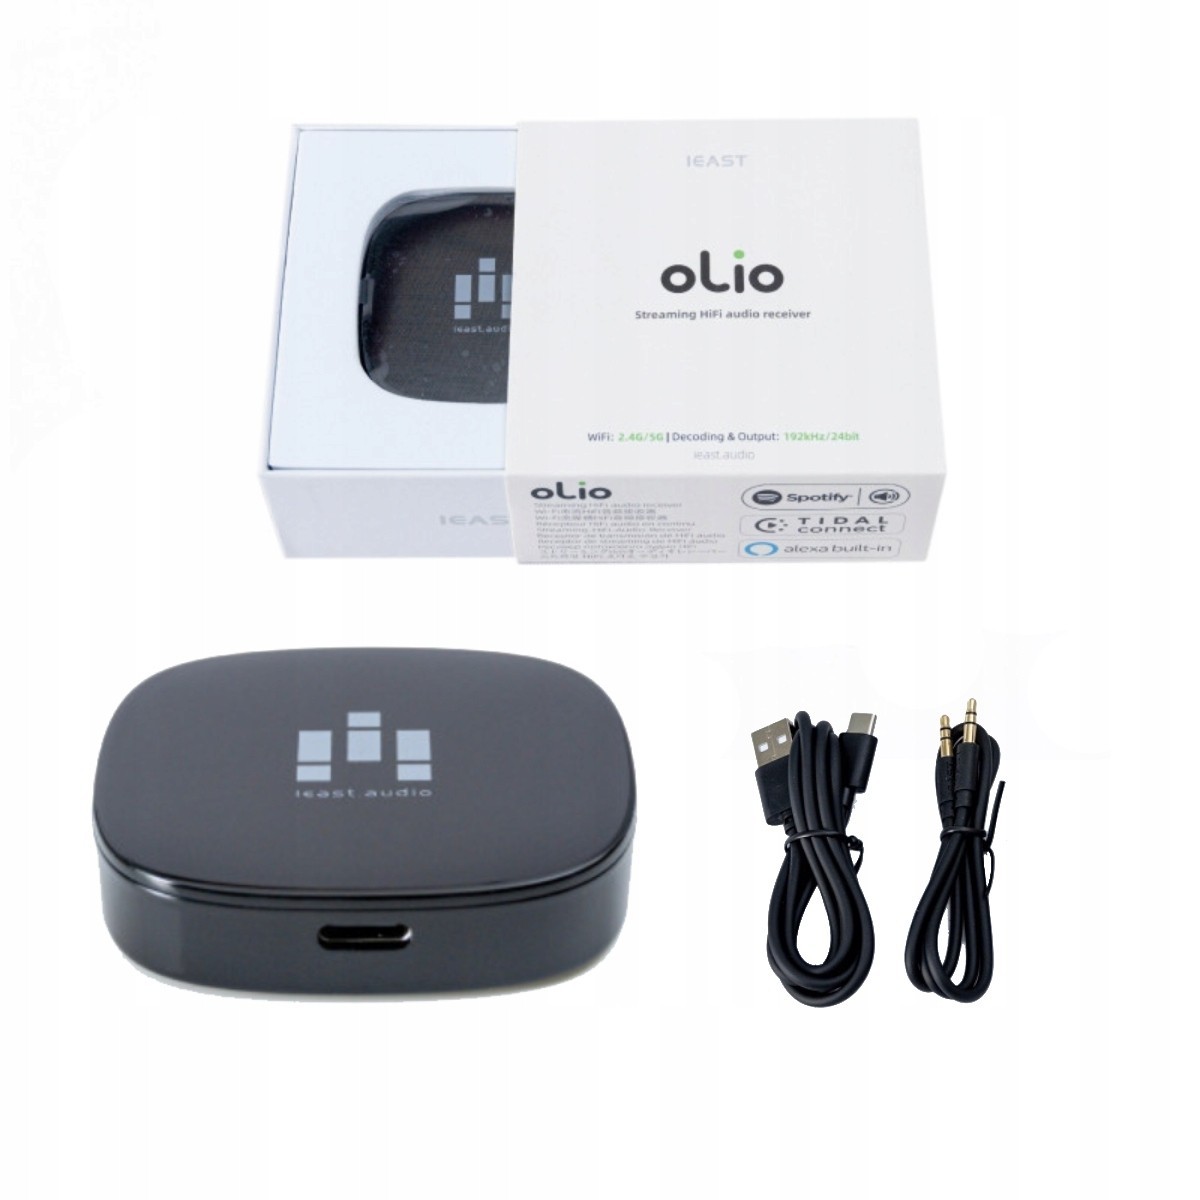 IEAST Olio Streaming HİFİ Audio Receiver | Olio-1 | 